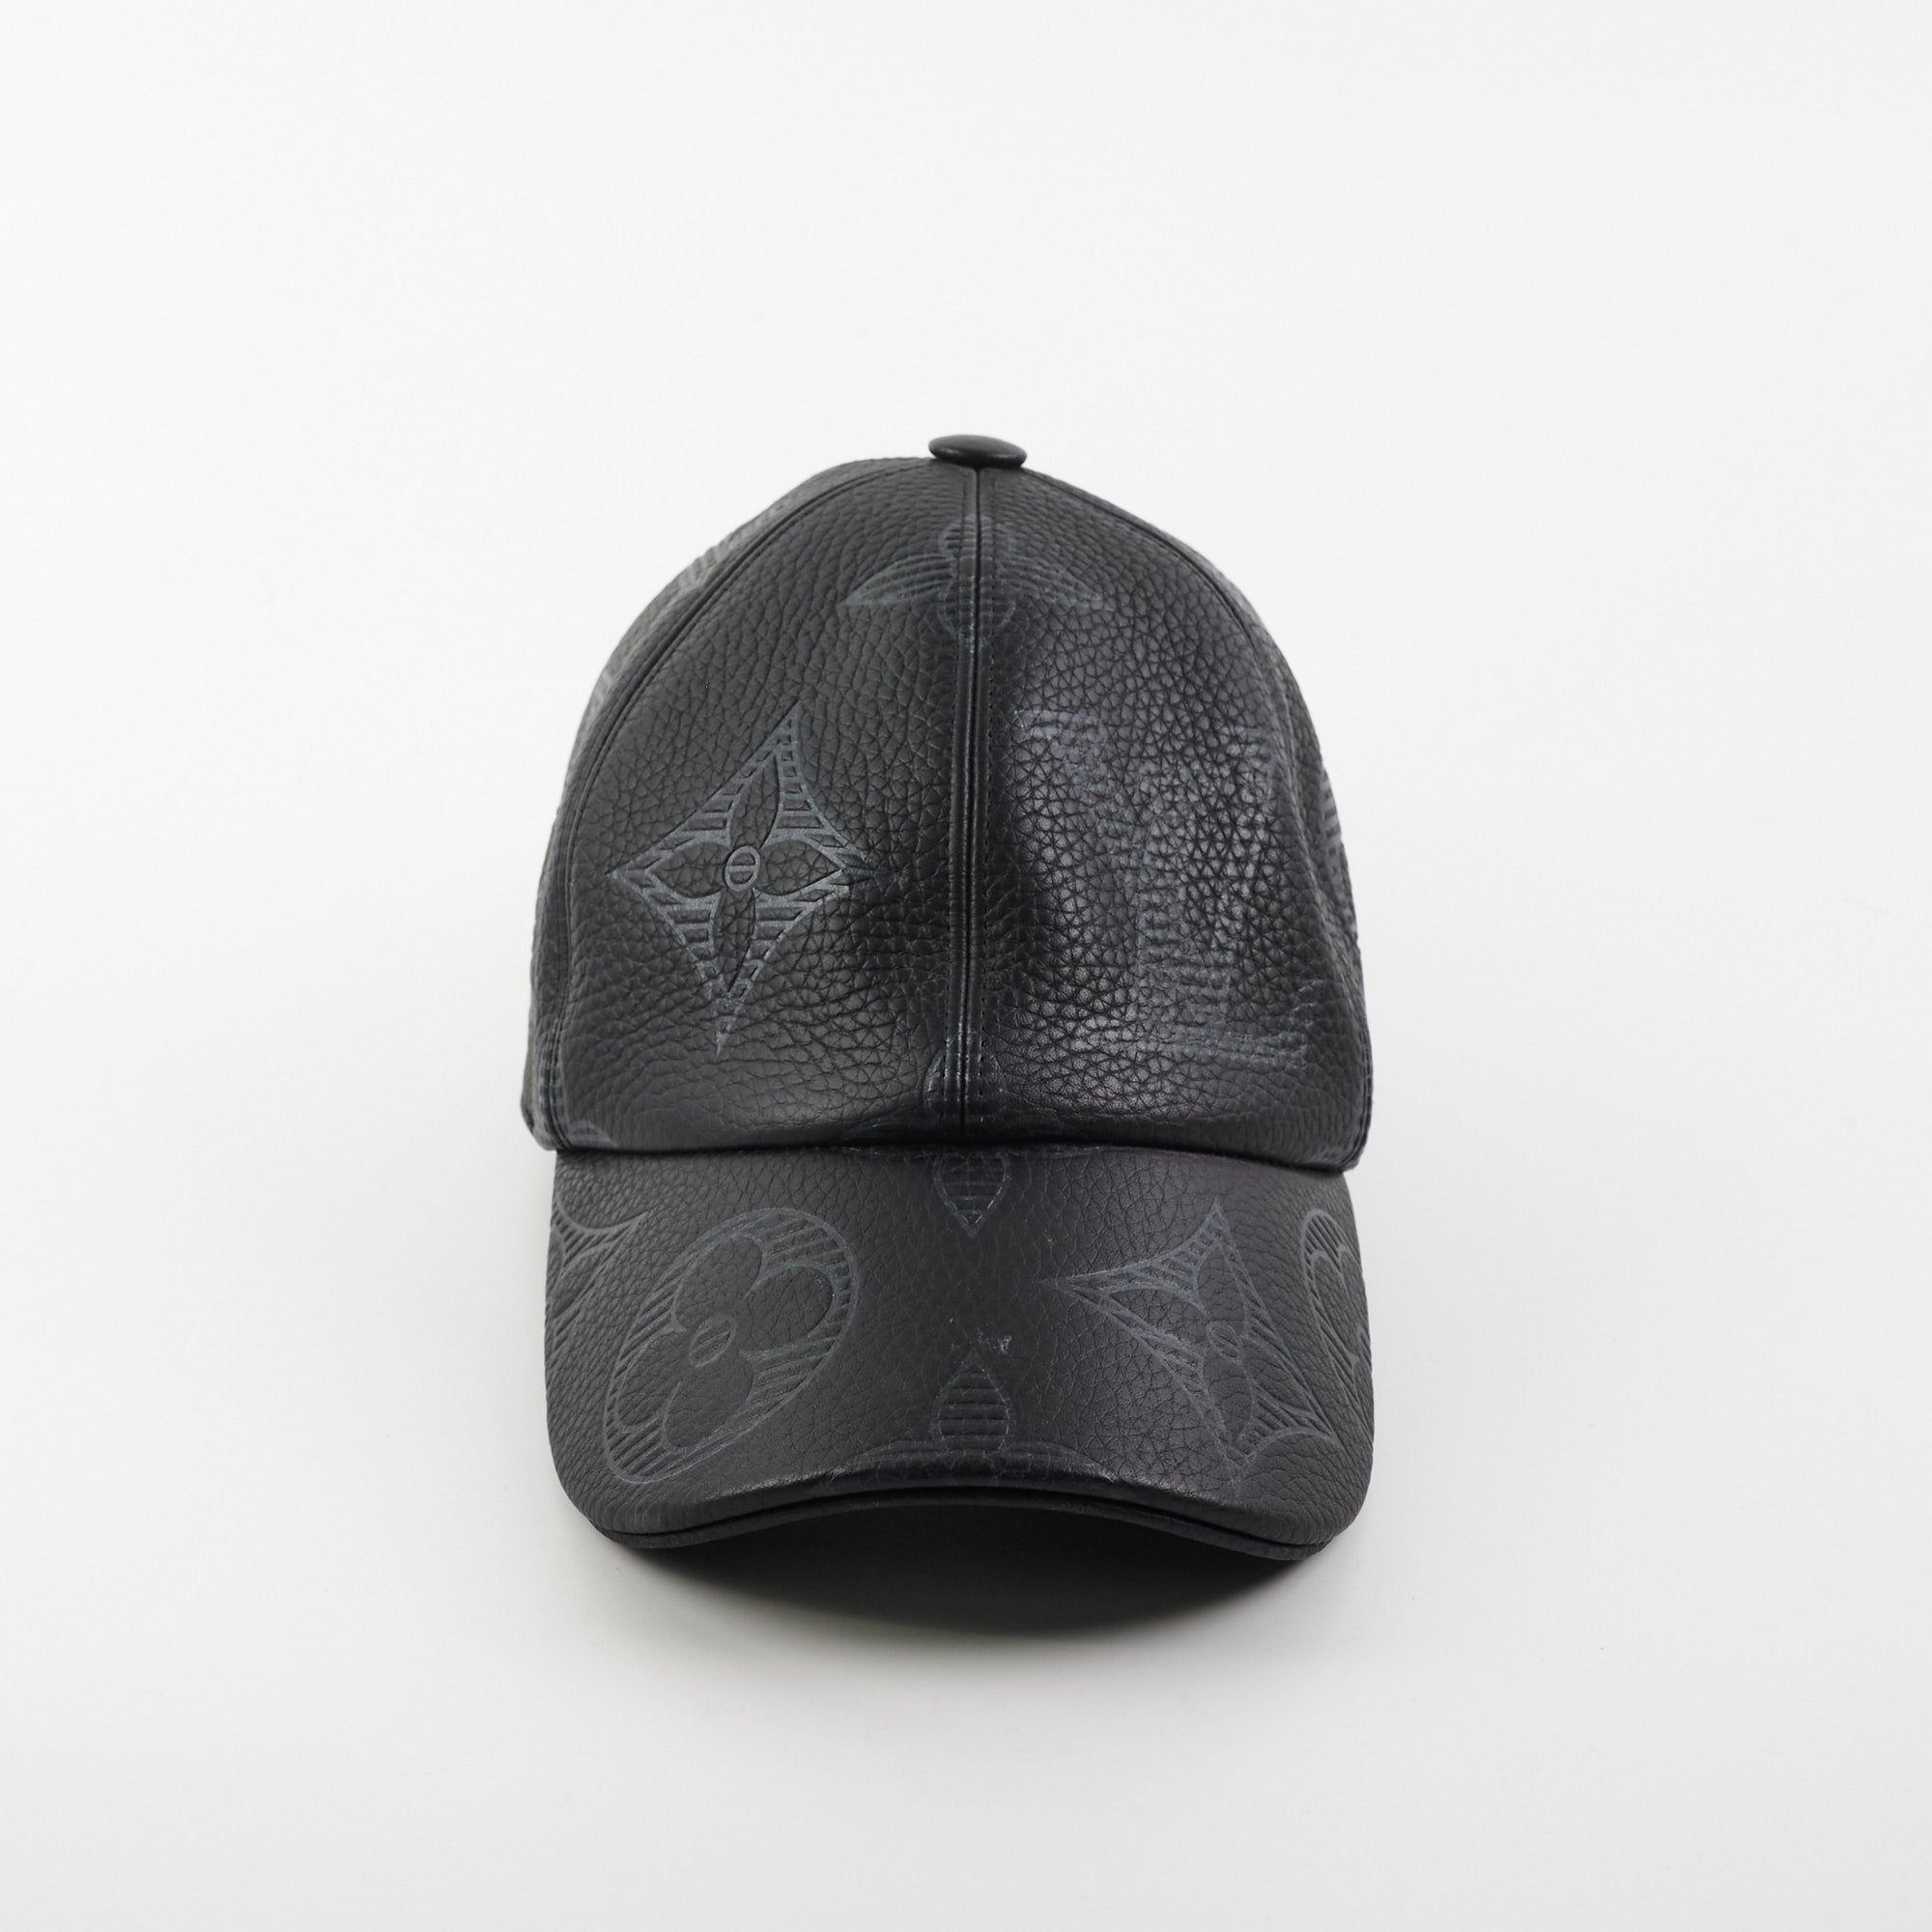 Louis Vuitton Black Monogram Shadow Cap - THE PURSE AFFAIR